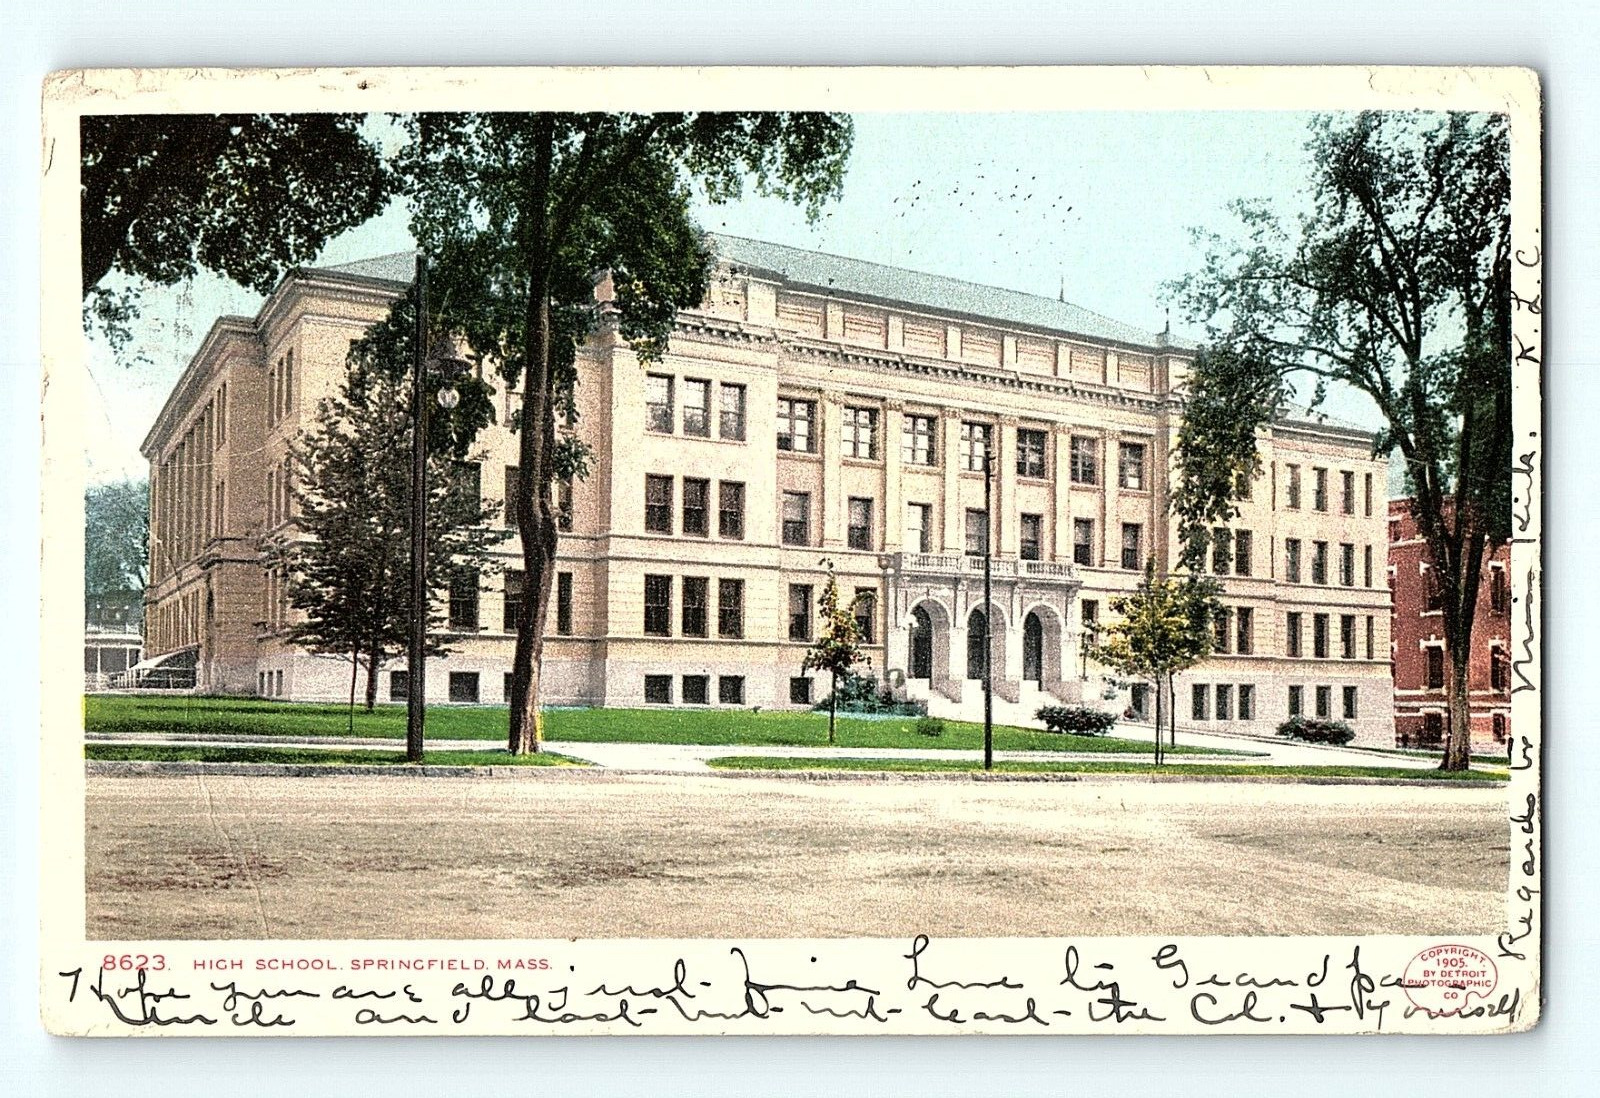 High School Springfield Massachusetts 1909 Street View Antique Postcard D5